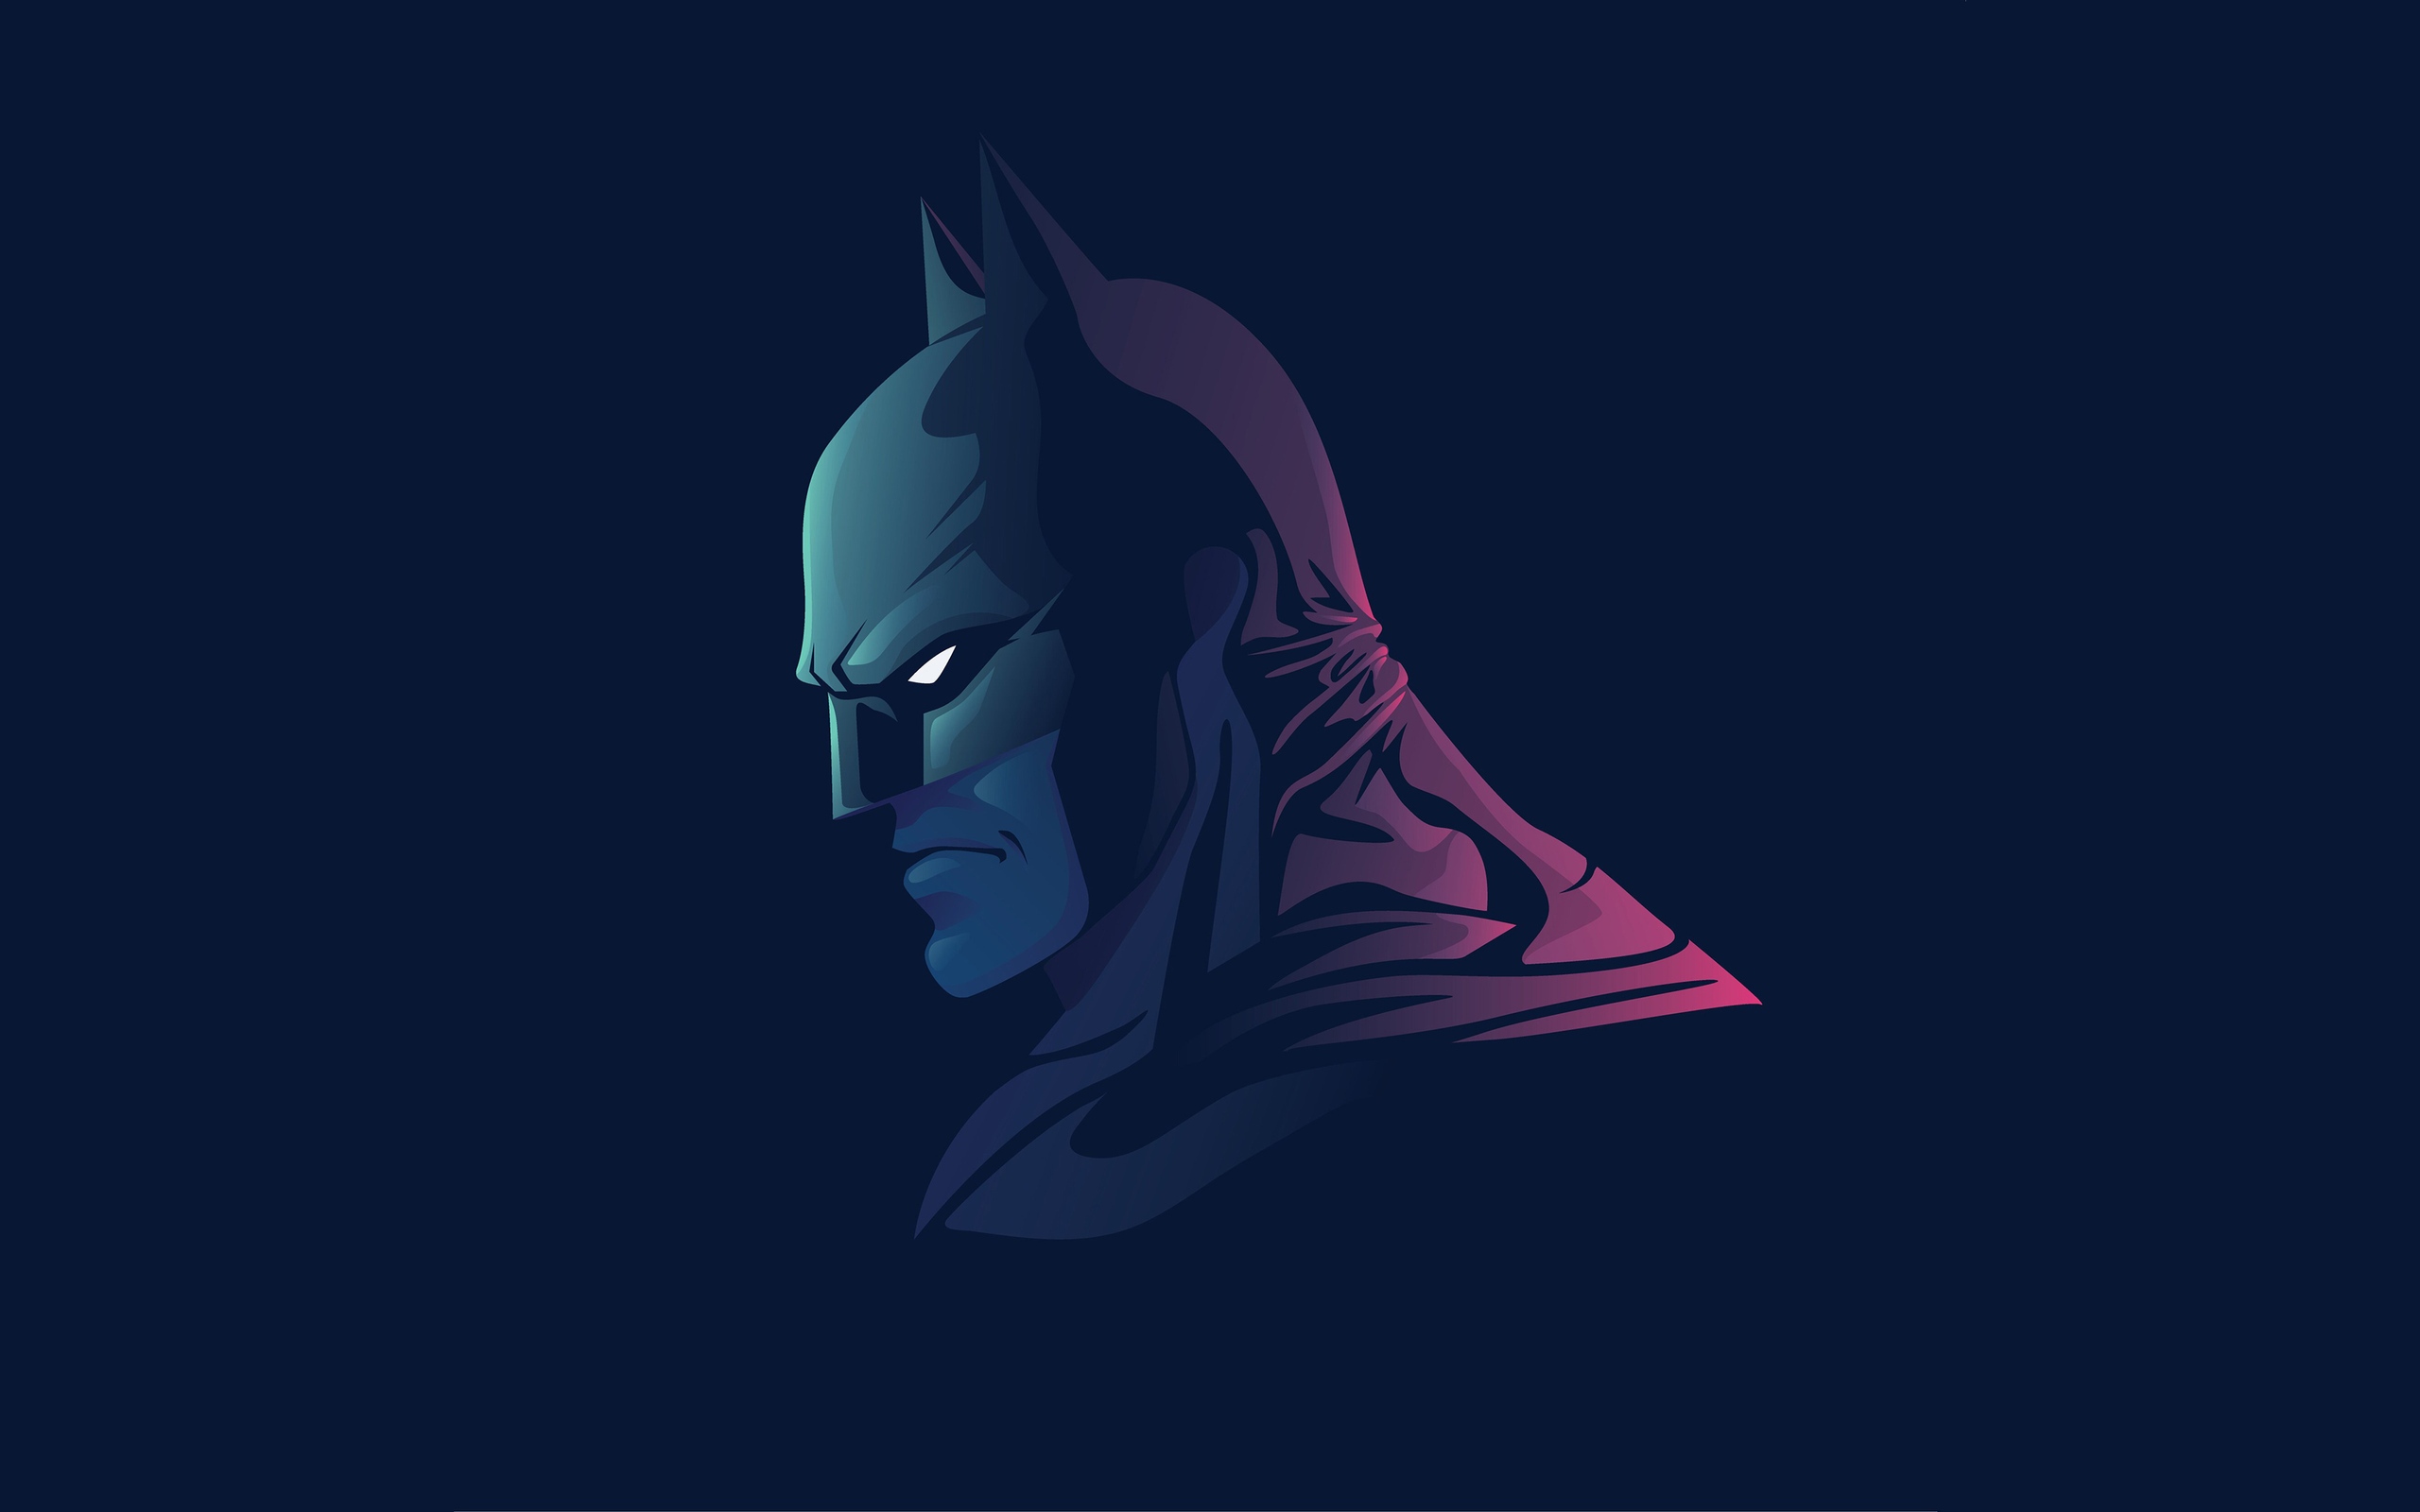 The Batman Posters 2022 - Minimalist